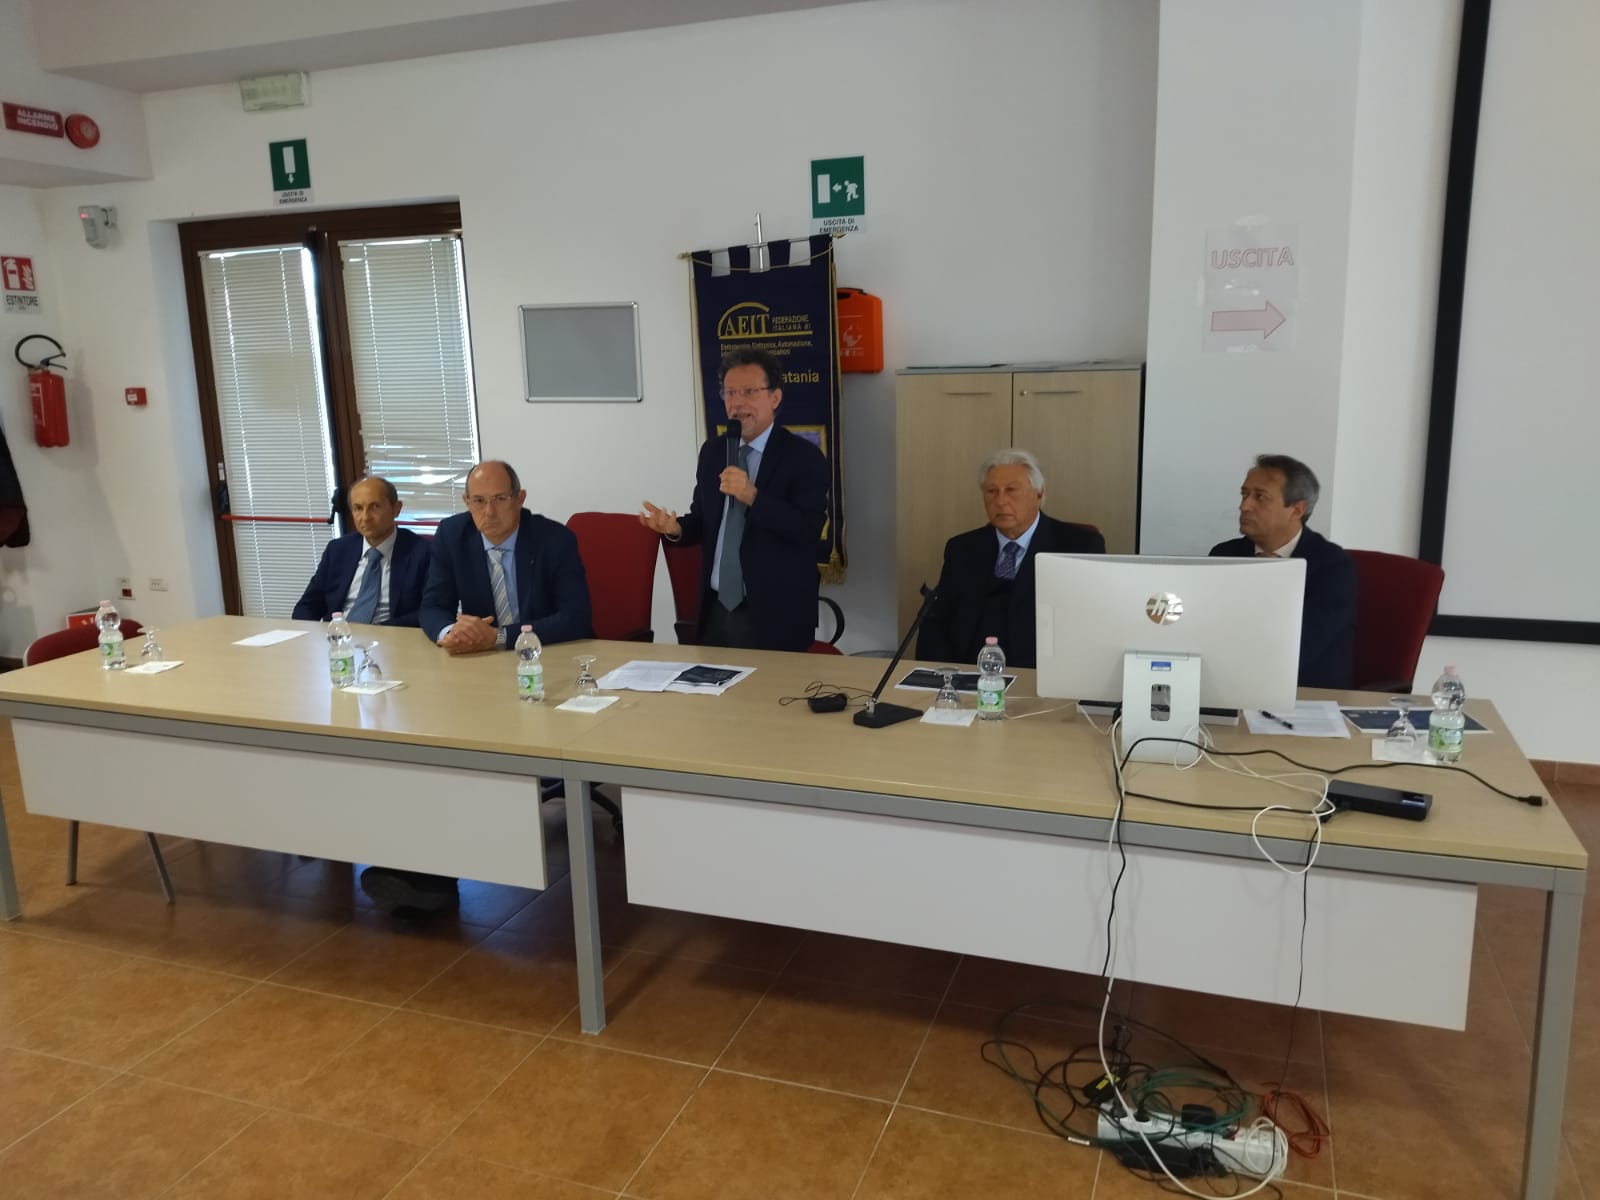 Catania e la Microelettronica, le opportunità per i giovani e il territorio